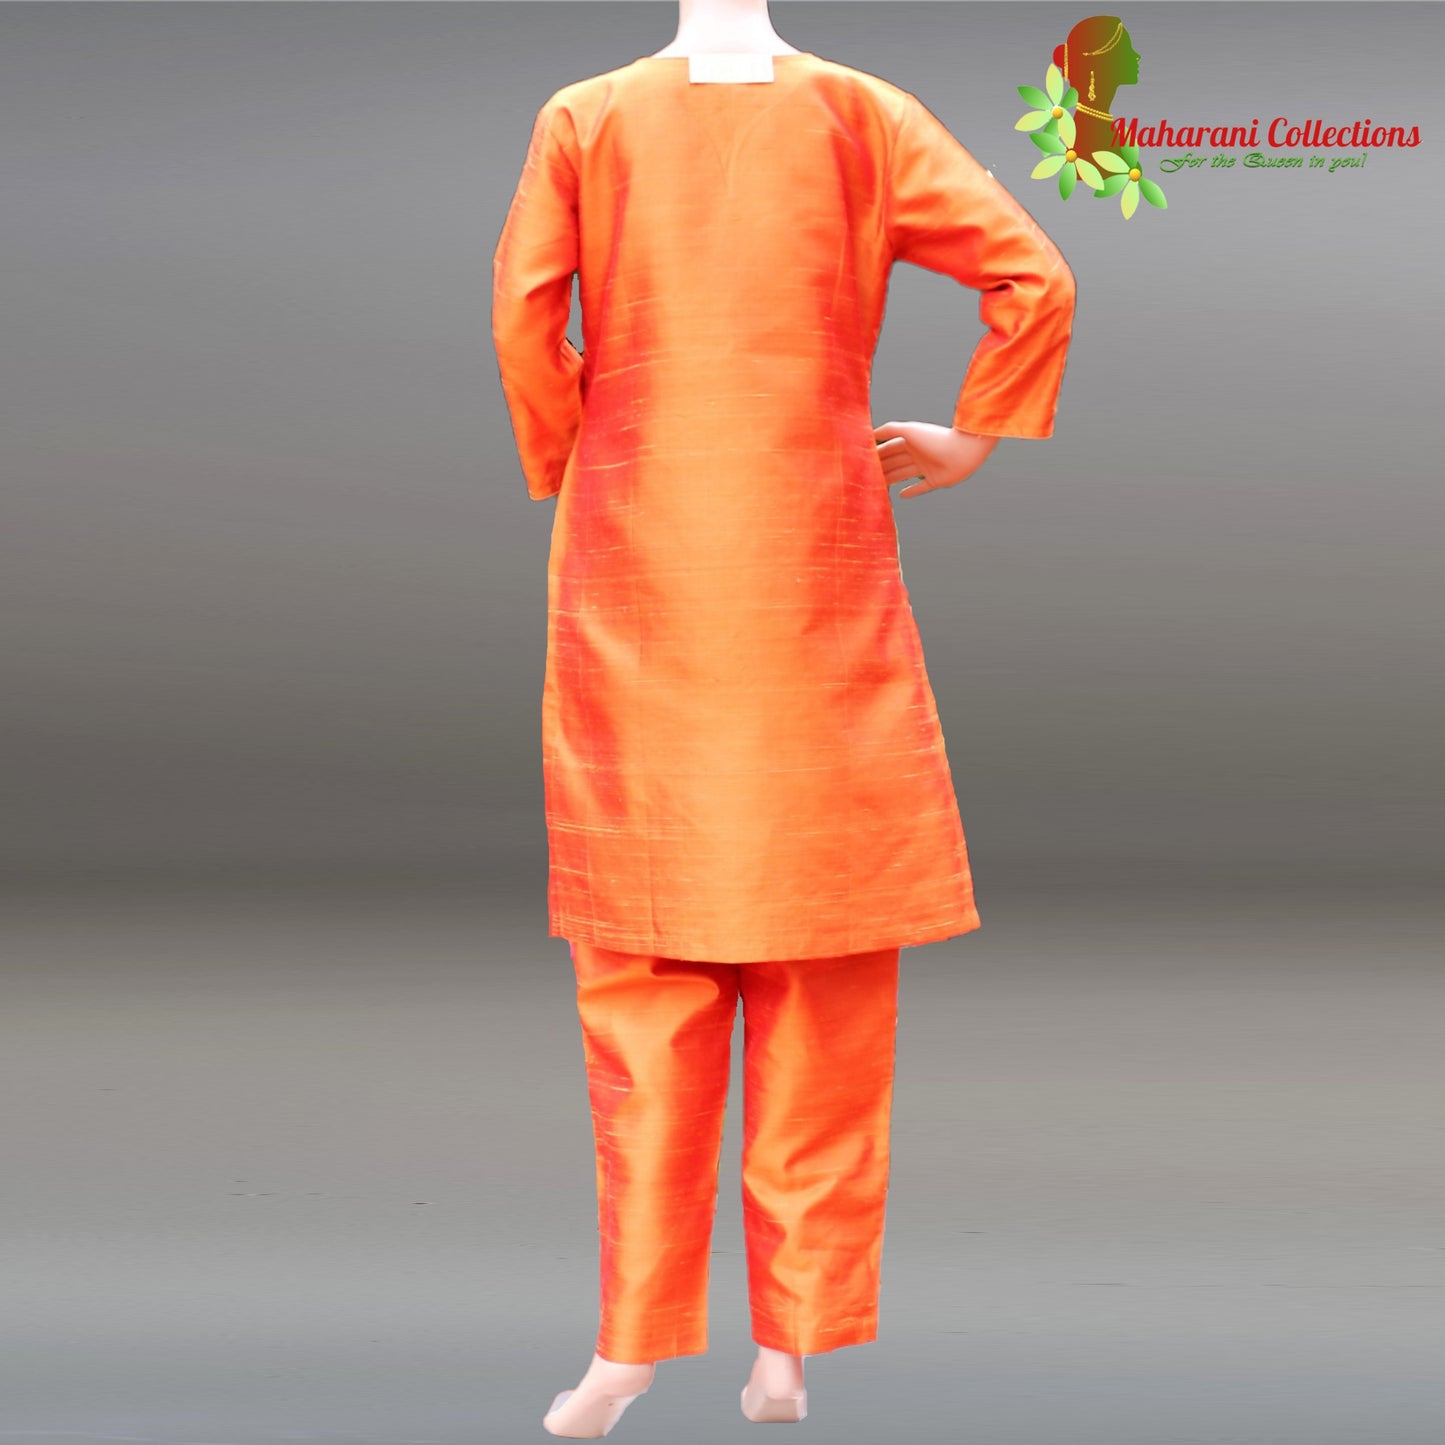 Maharani's Finest Silk Pant Suit - Pure Bhagalpur Tussar Silk - Orange (M)